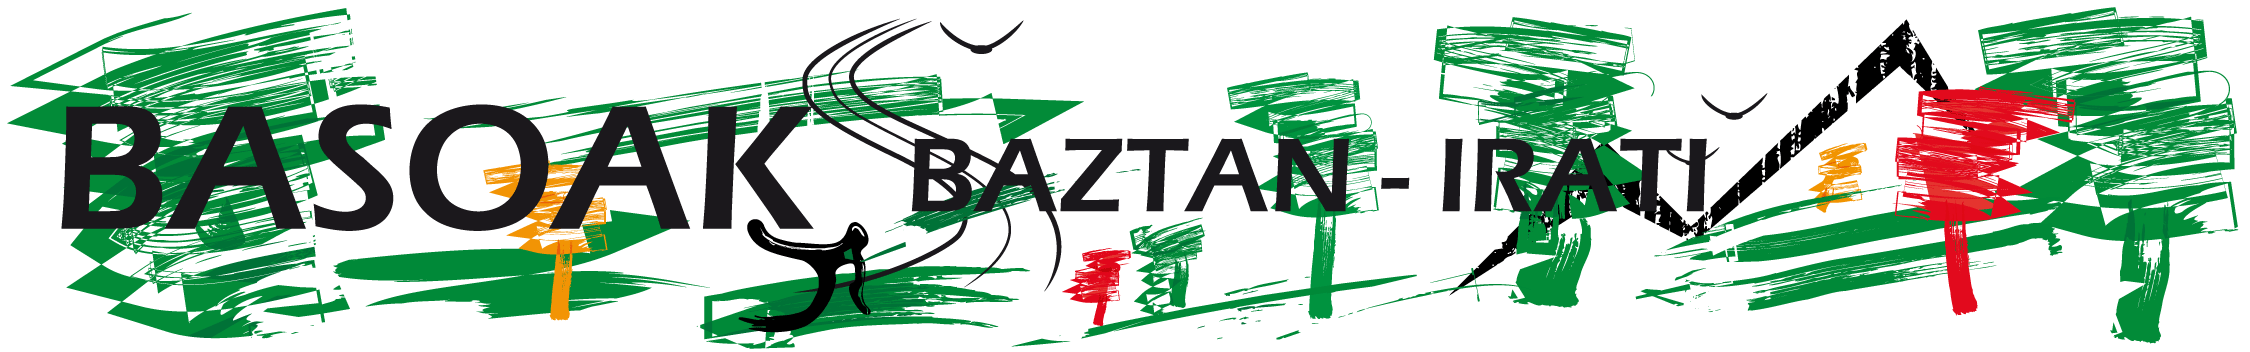 logo-Basoak-baztan-irati